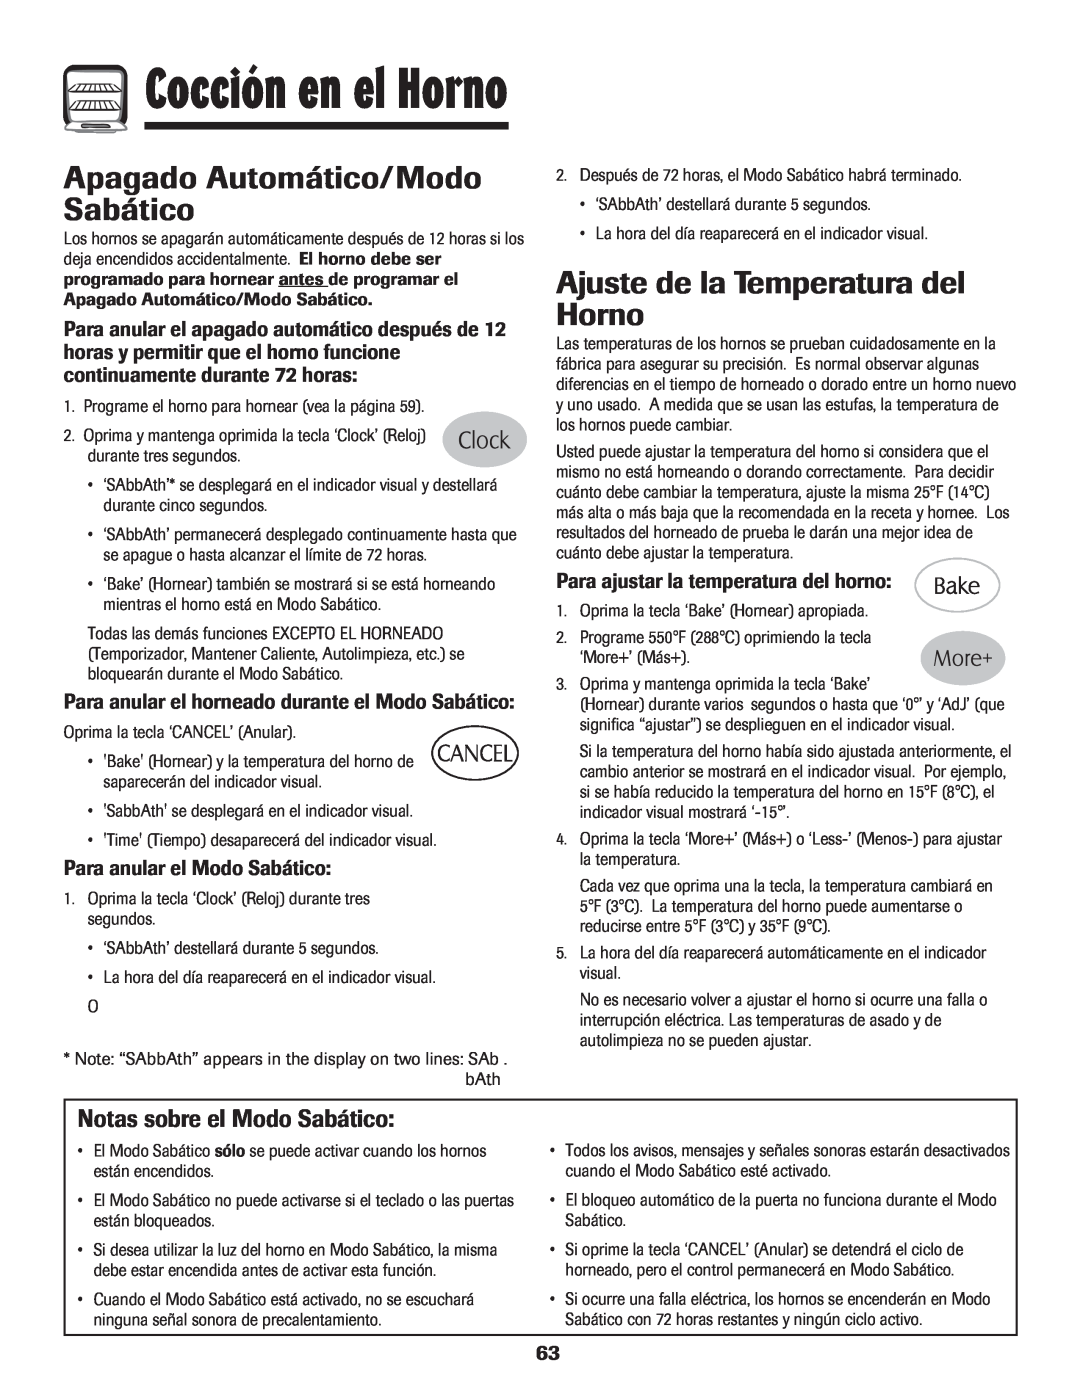 Maytag MGR6751BDW manual Apagado Automático/Modo Sabático, Ajuste de la Temperatura del Horno, Notas sobre el Modo Sabático 